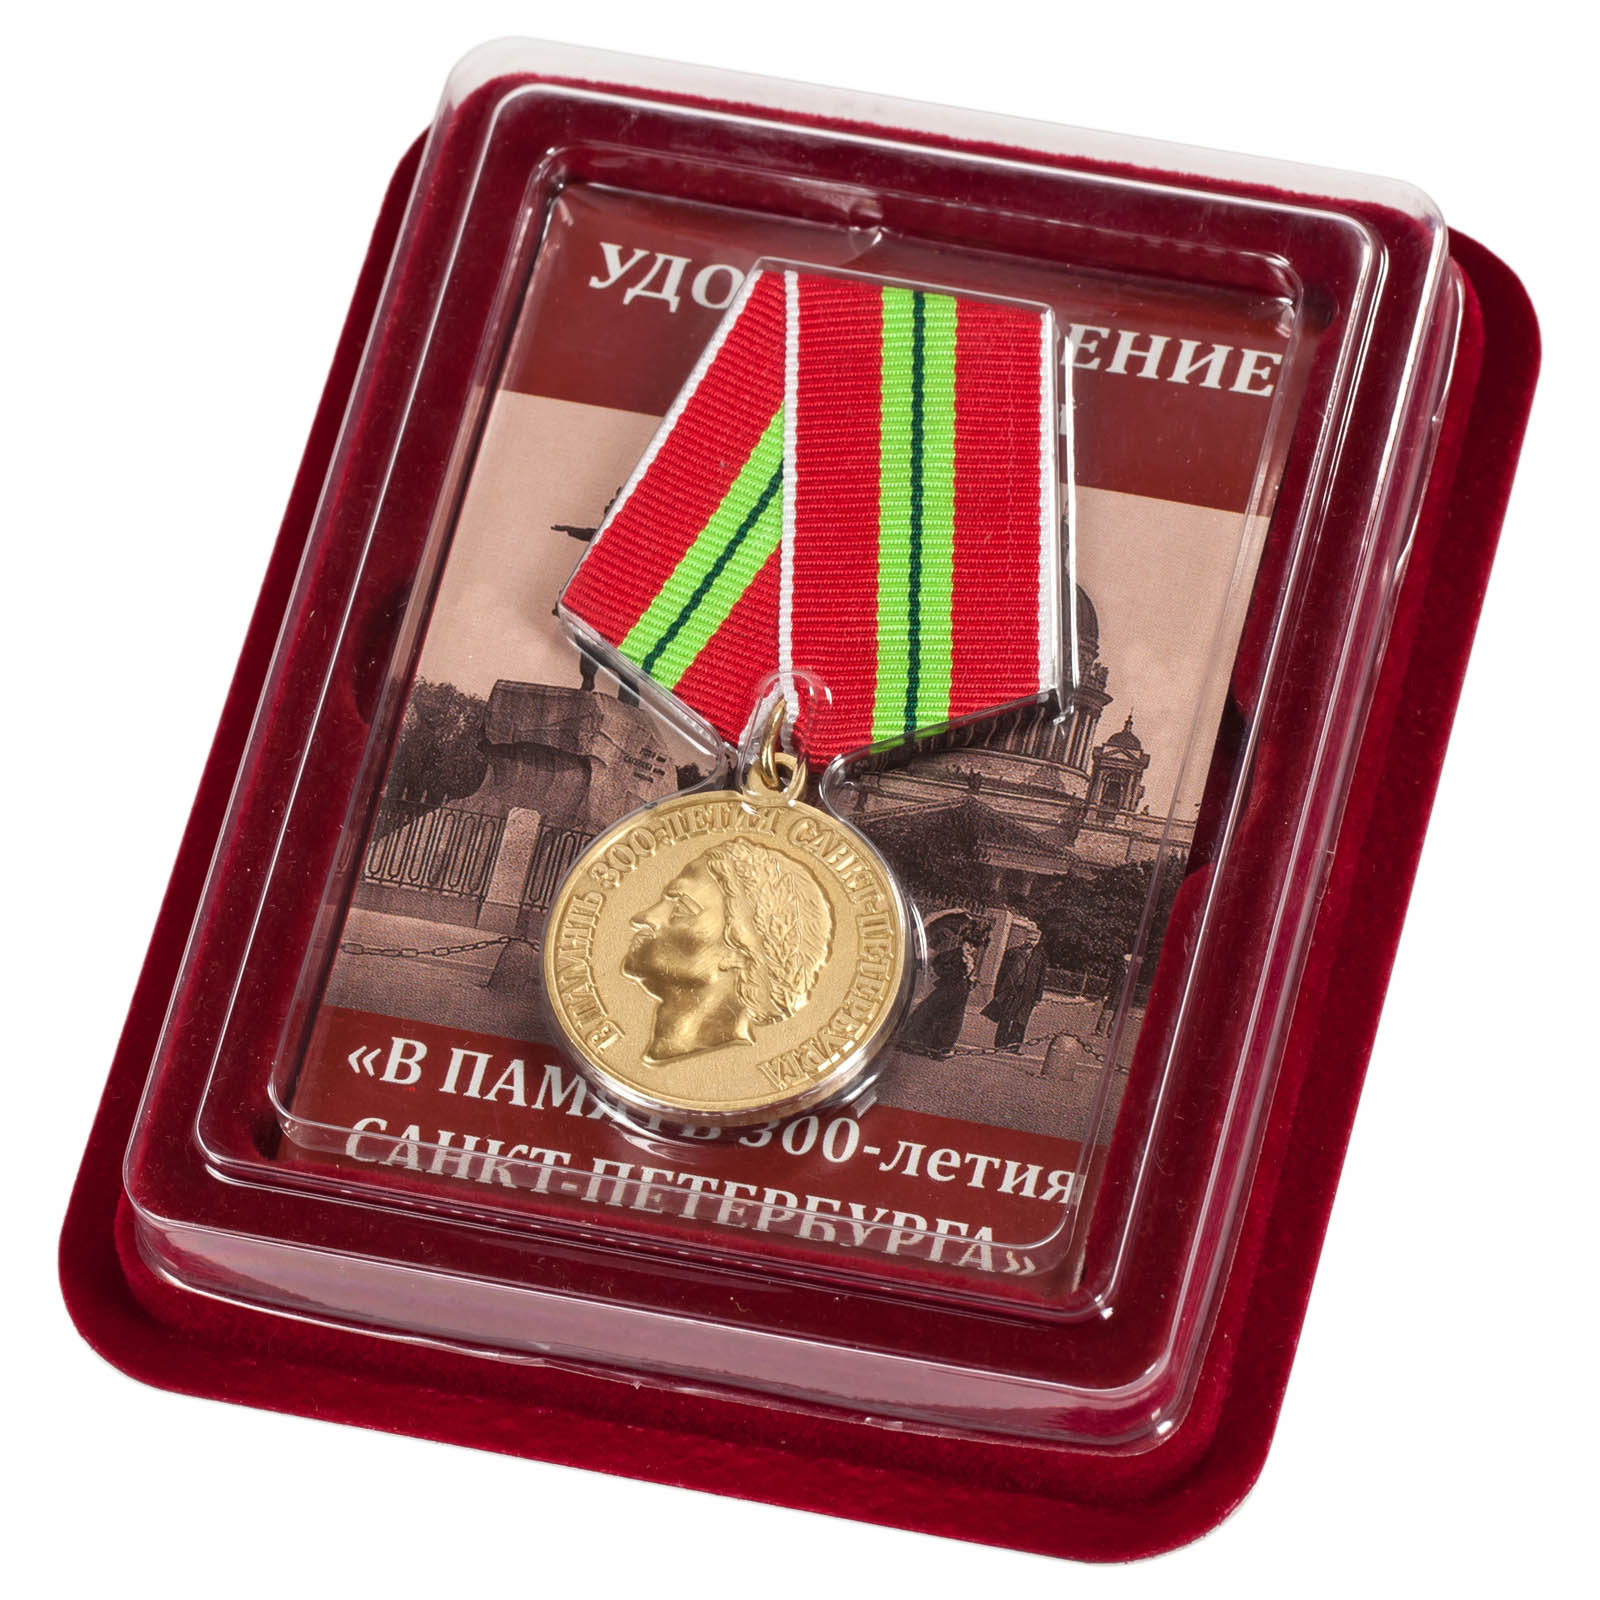 Юбилейная медаль "В память 300-летия Санкт-Петербурга" в наградном футляре от Военпро